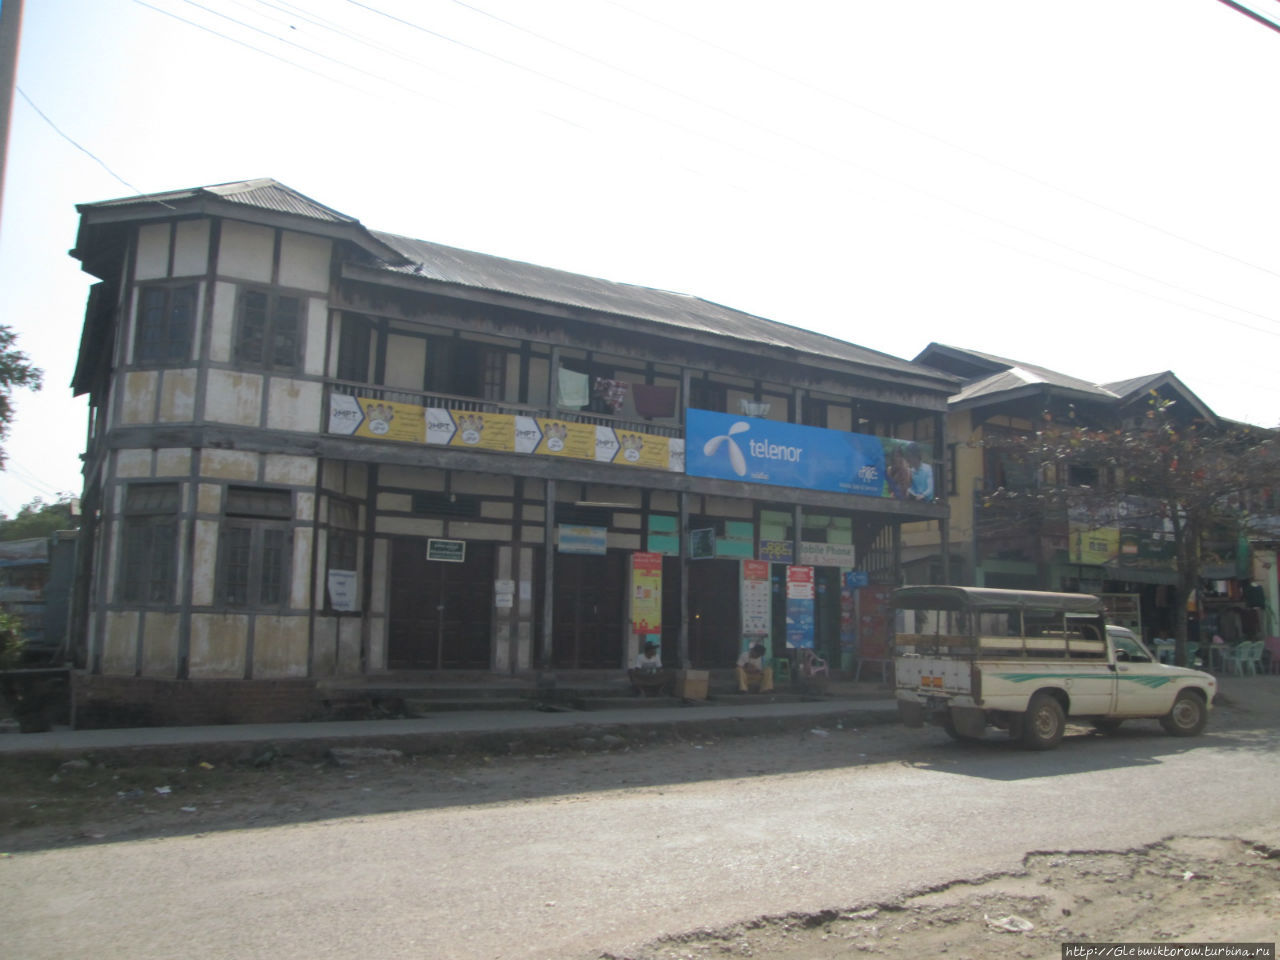 Бродилка по центру города Сипо, Мьянма